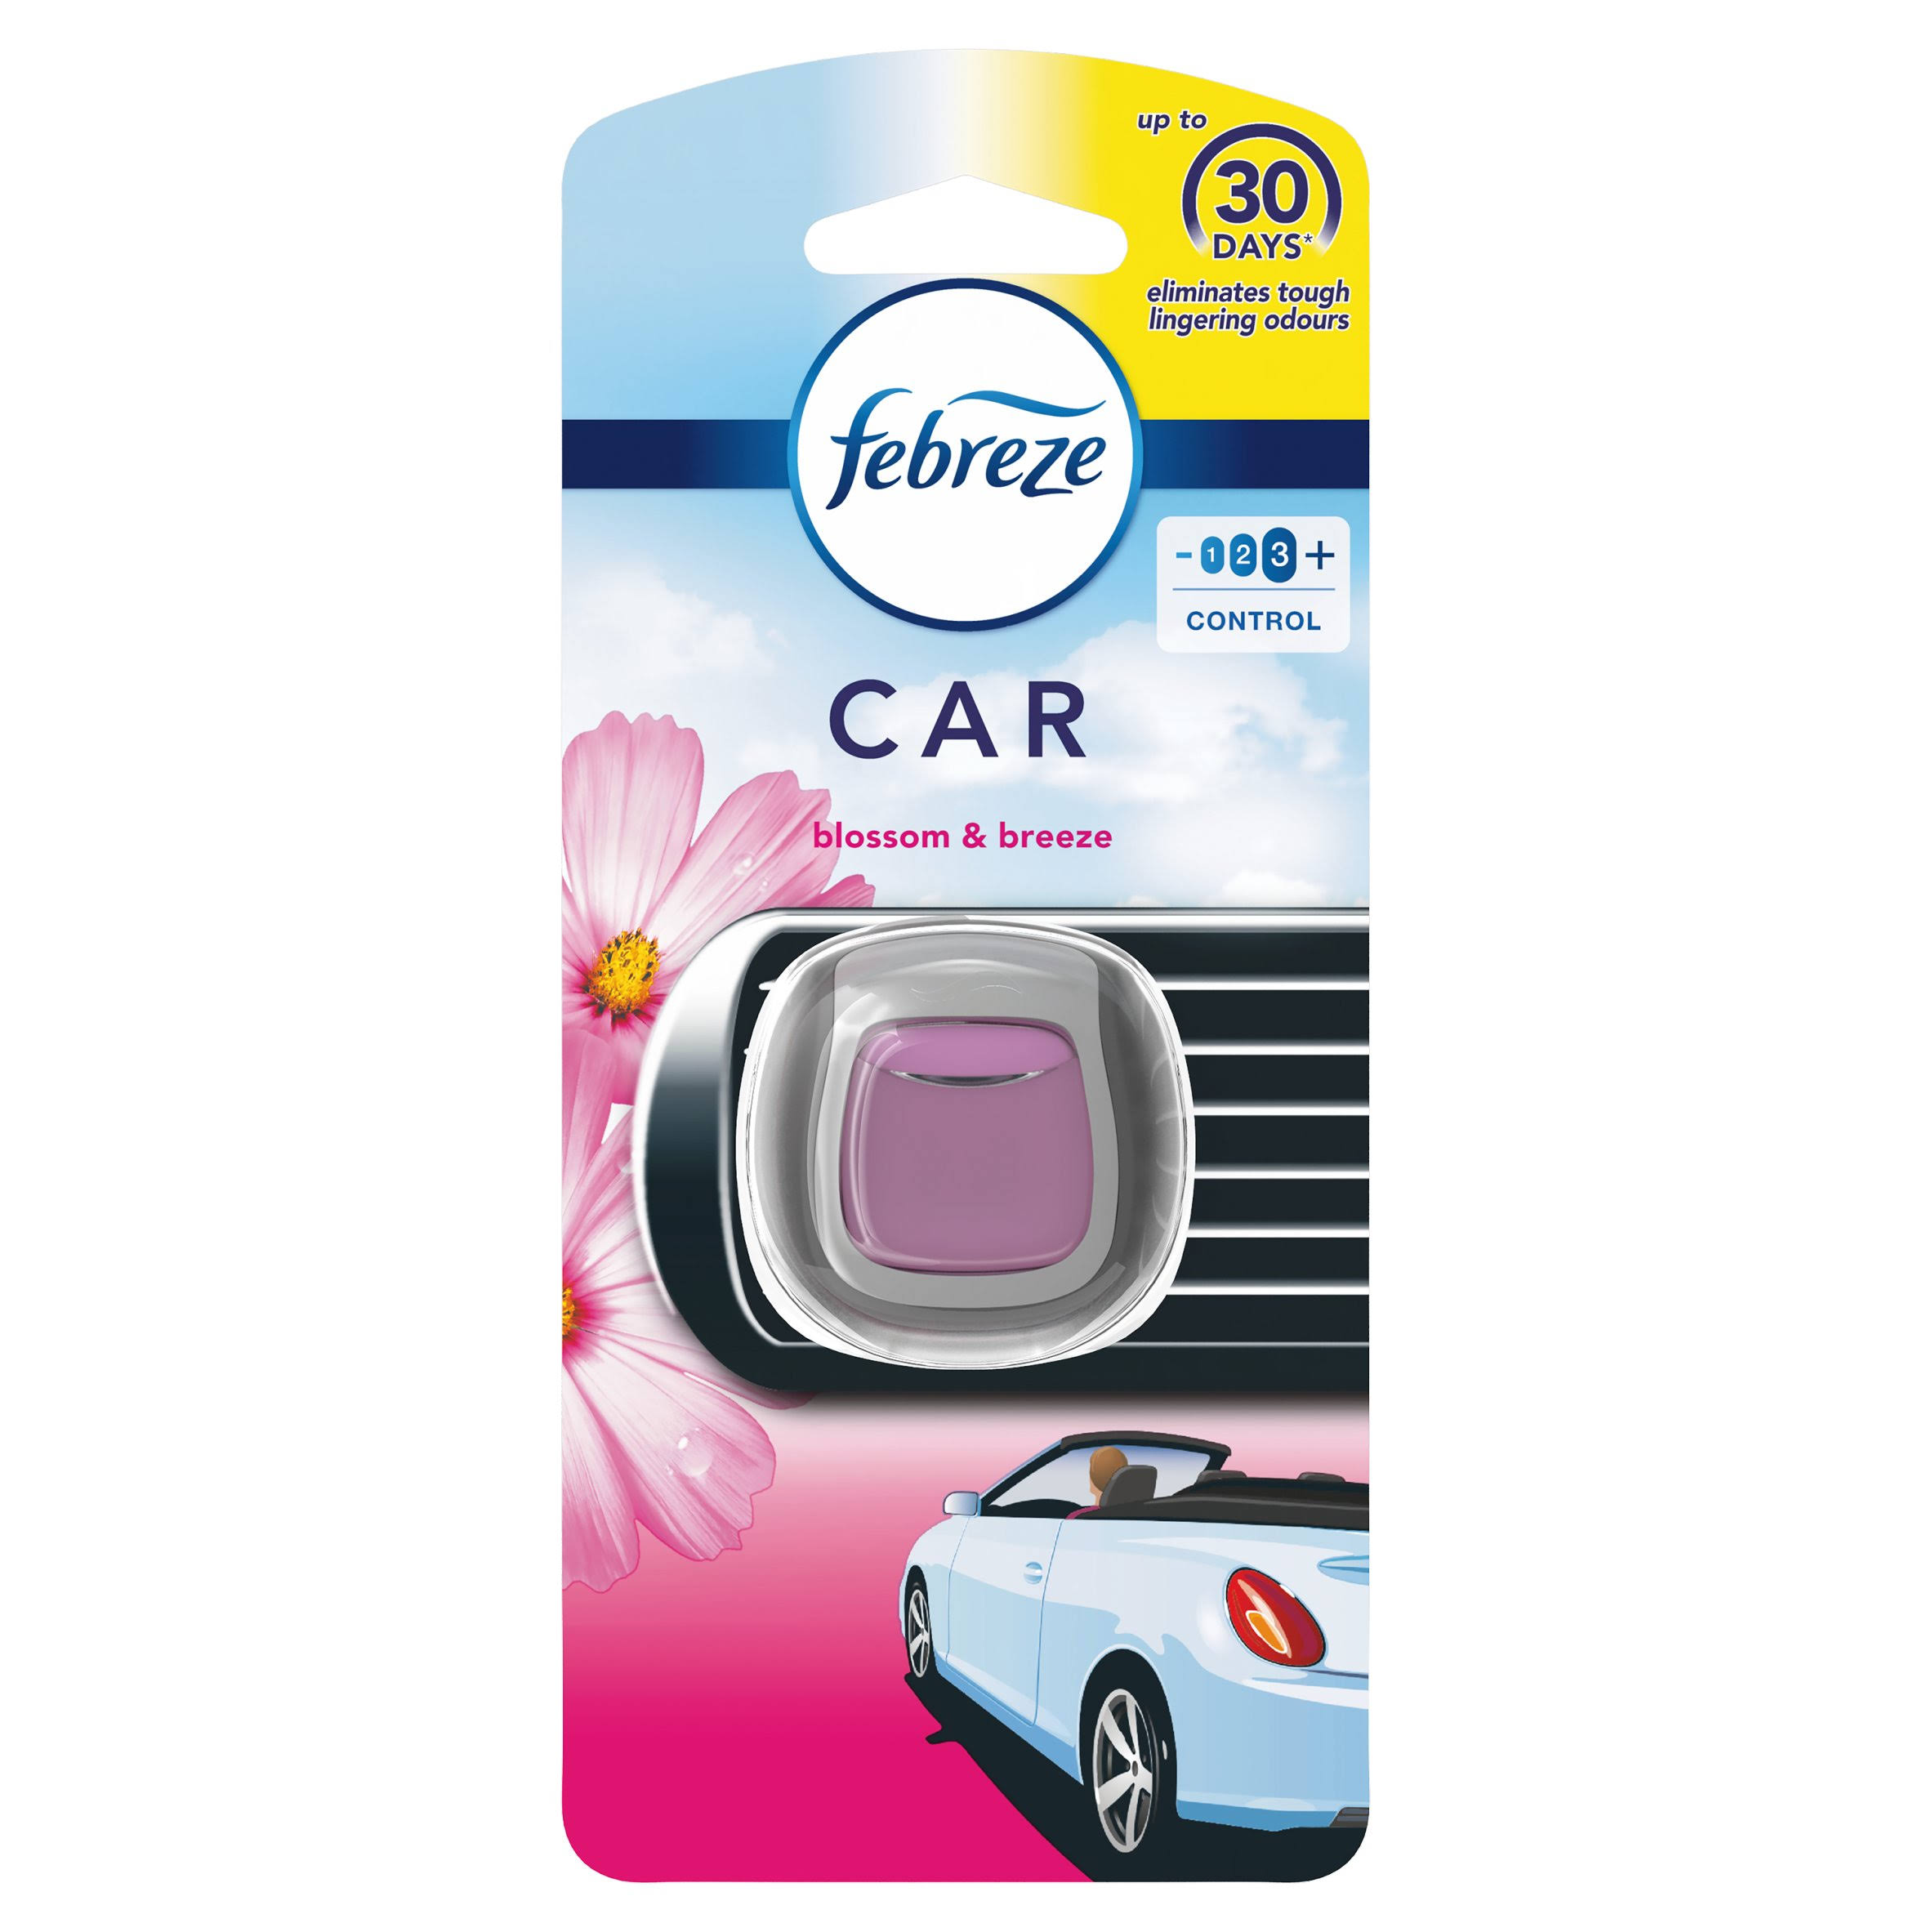 Febreze Car Clip Air Freshener - Blossom & Breeze